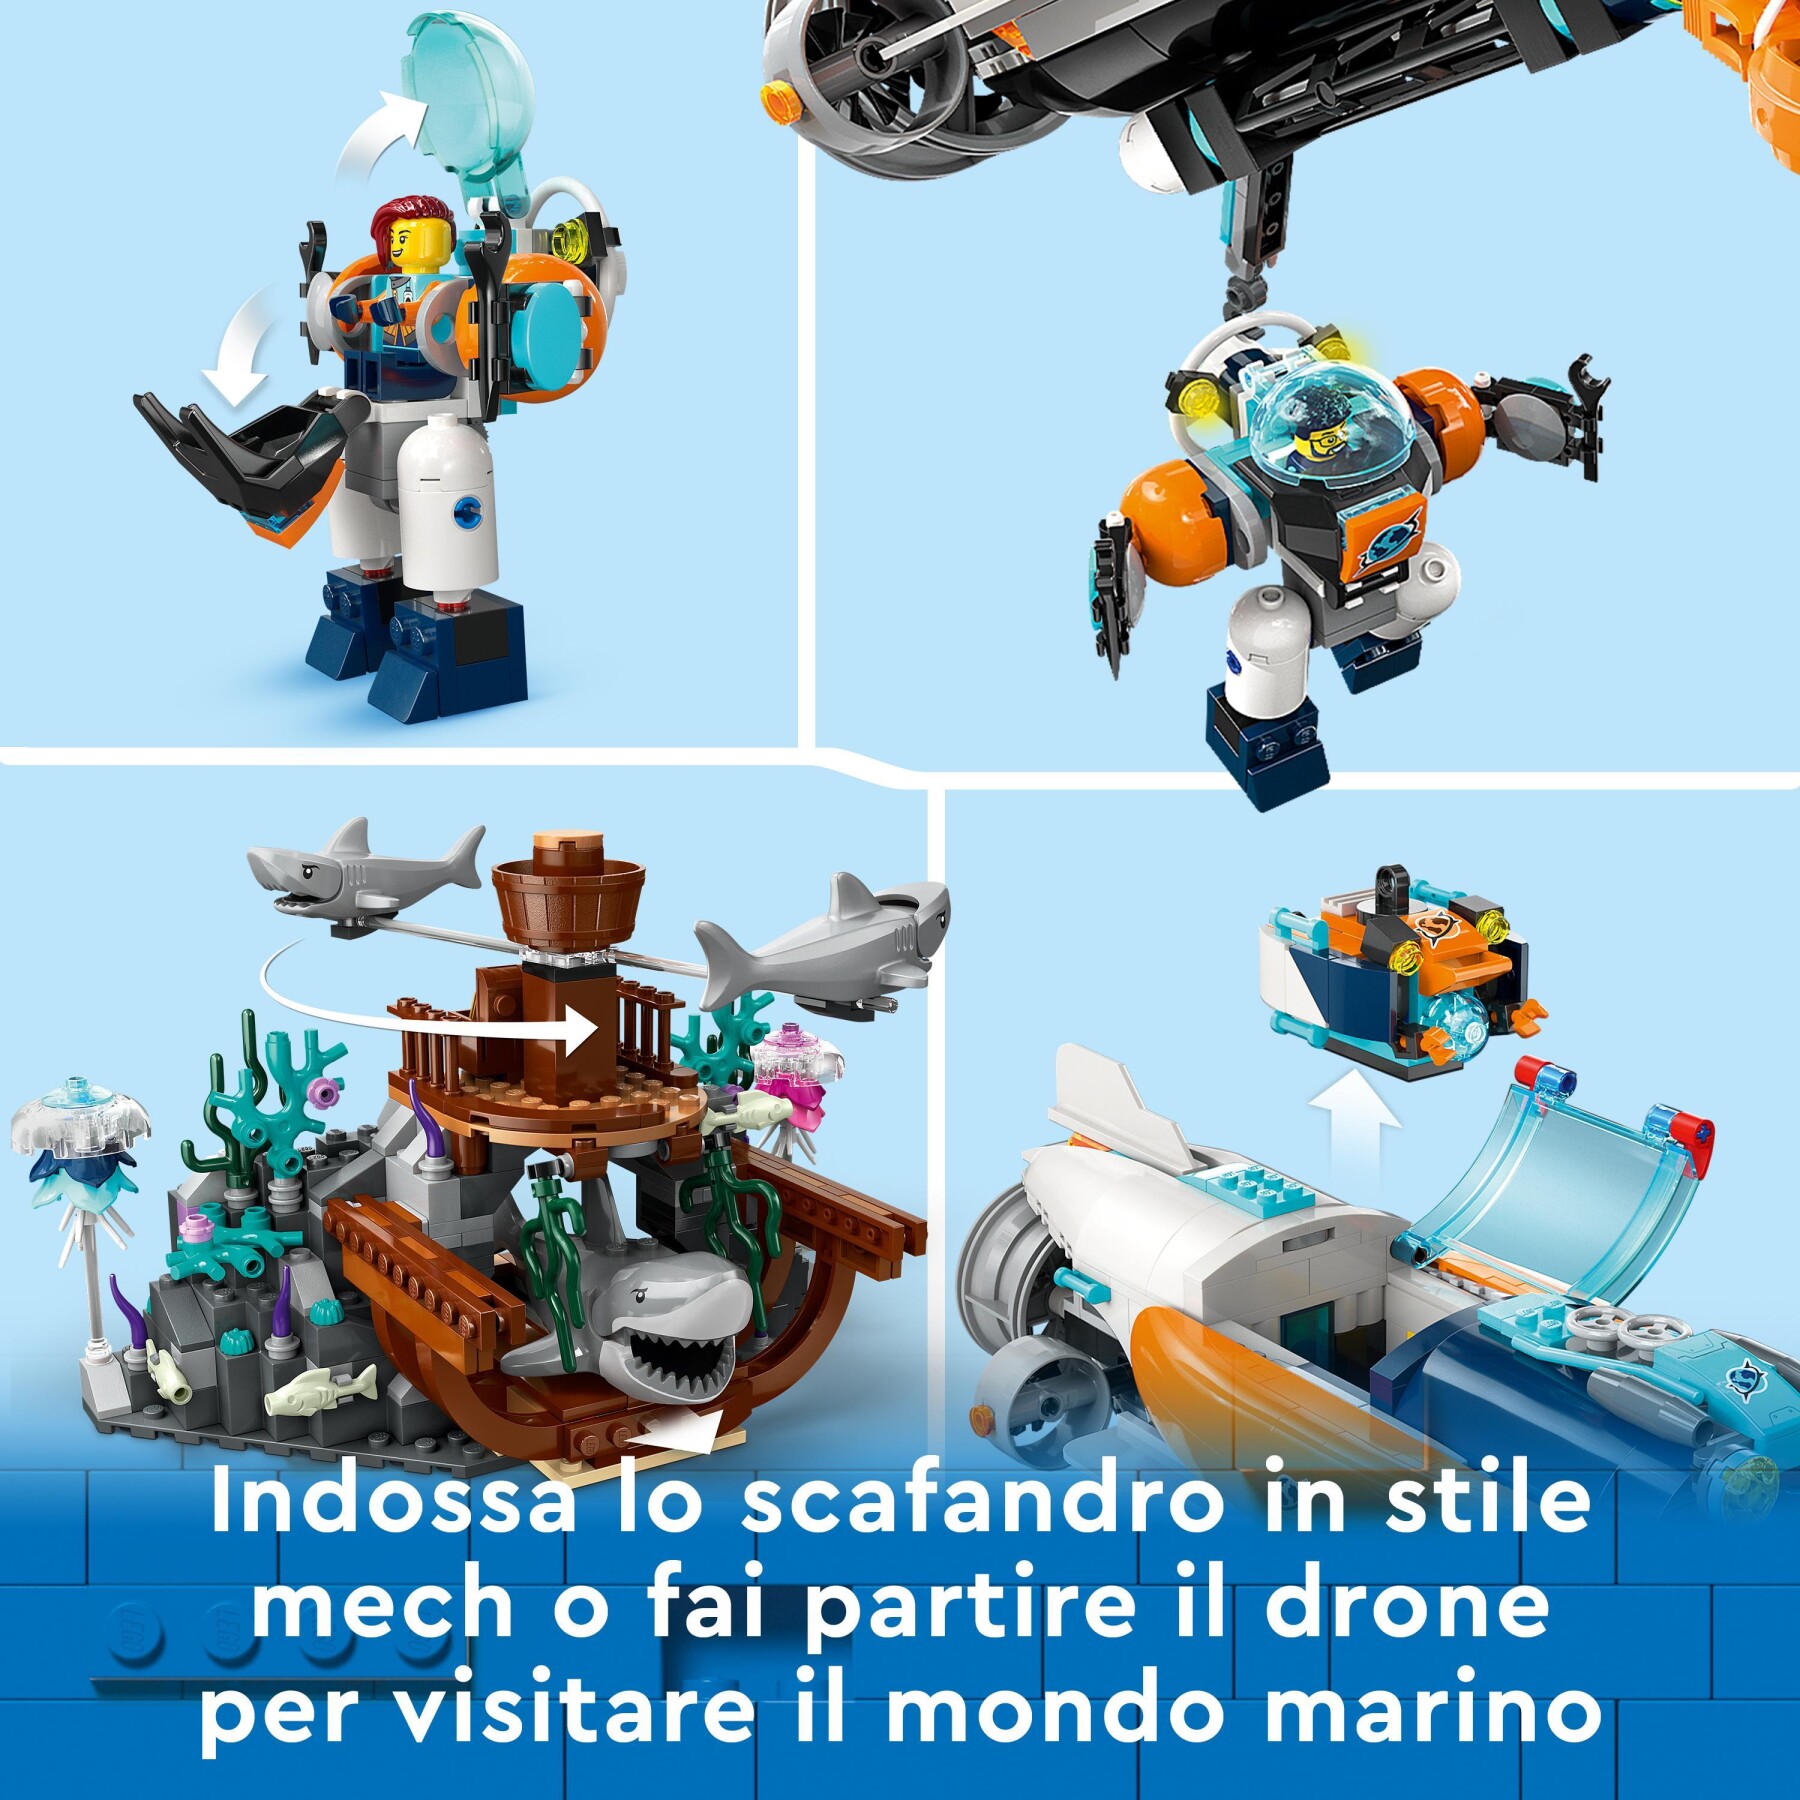 Lego city 60379 sottomarino per esplorazioni abissali giocattolo con drone e relitto di barca, regalo per bambini 7+ anni - LEGO CITY